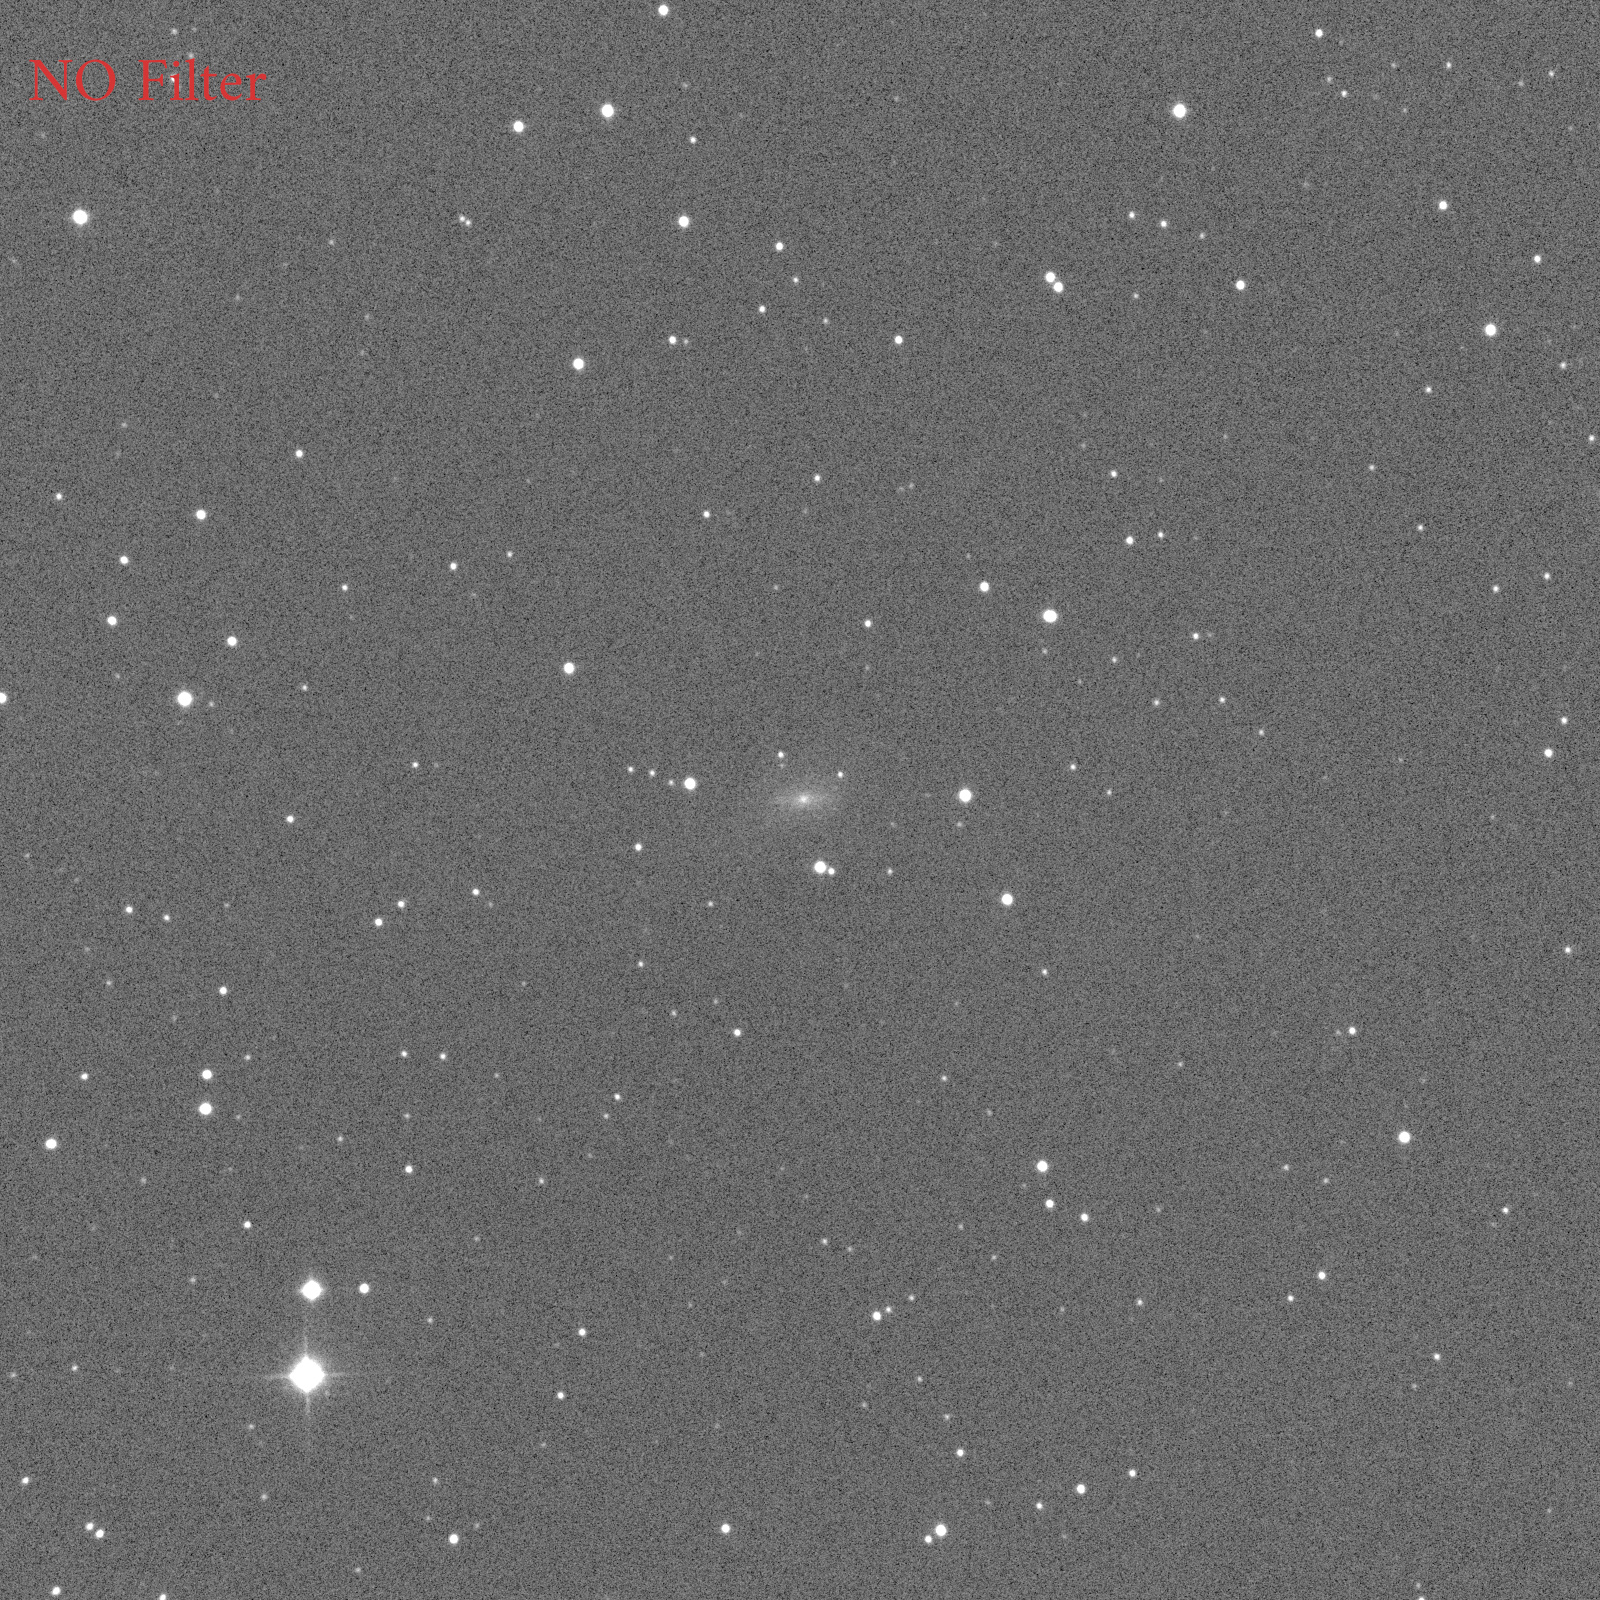 NGC1784 no filter